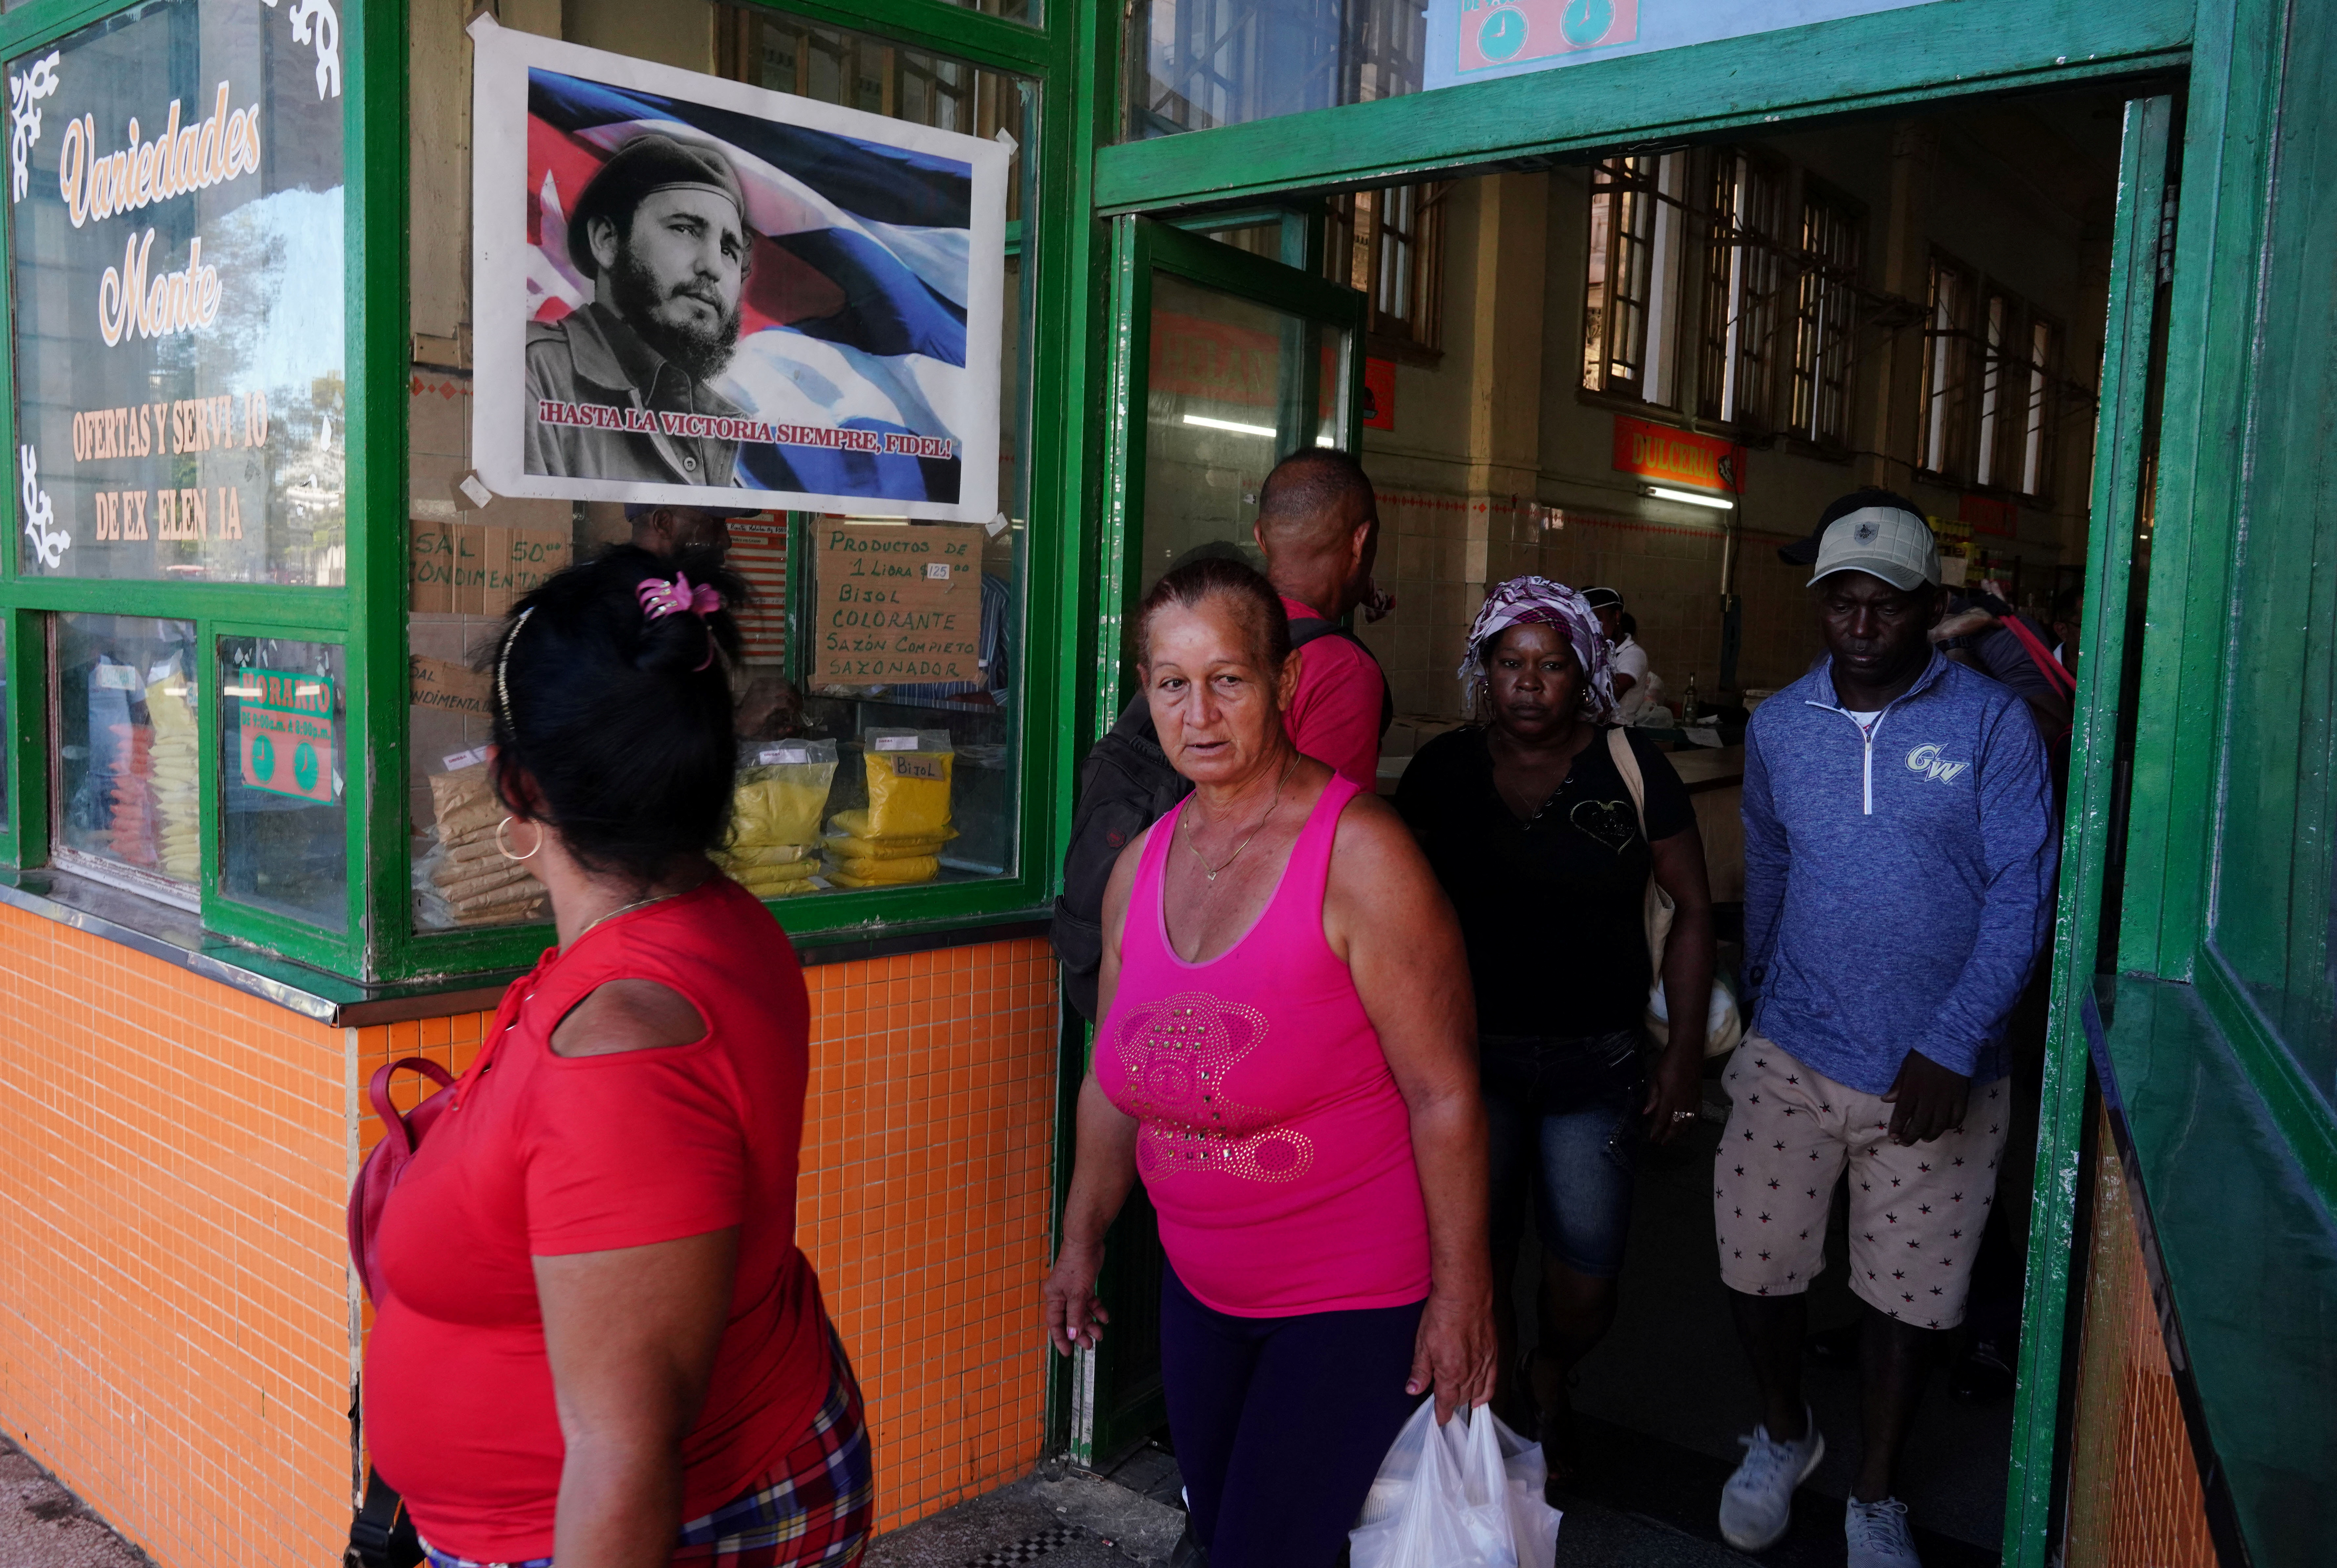 La gente sale de una tienda que muestra una imagen del fallecido Fidel Castro, en el centro de La Habana, Cuba (Archivo/Reuters)